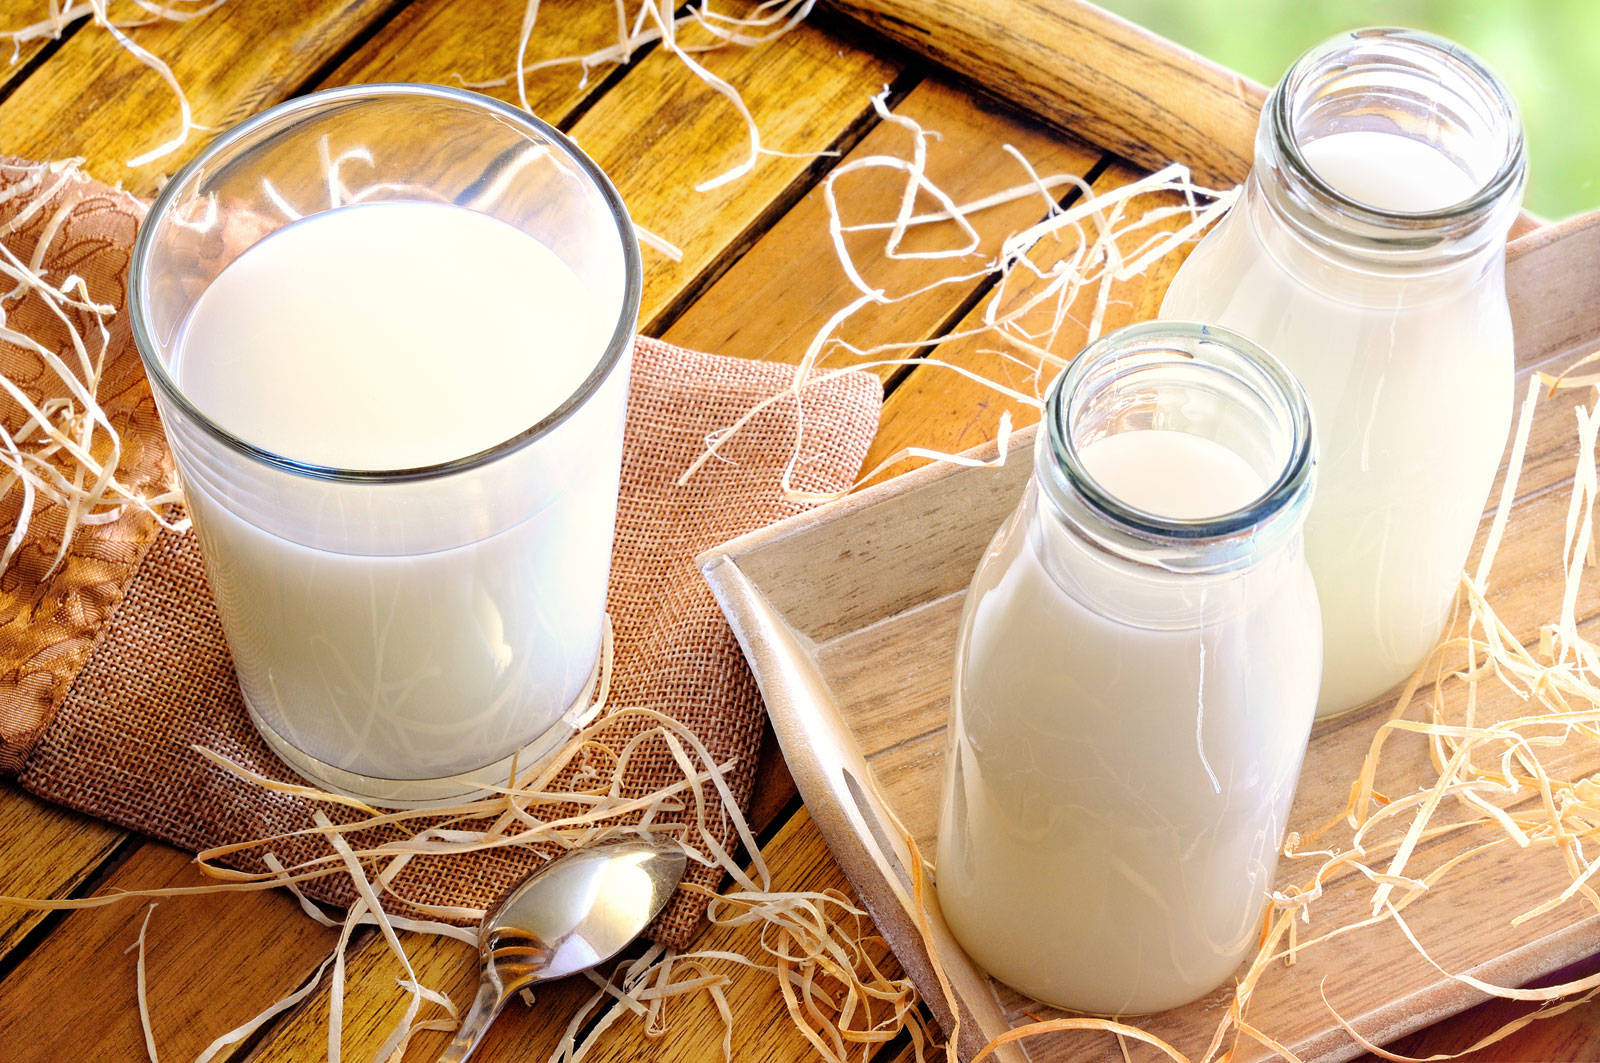 Введение маркировки замедлило рост цен на молочную продукцию 